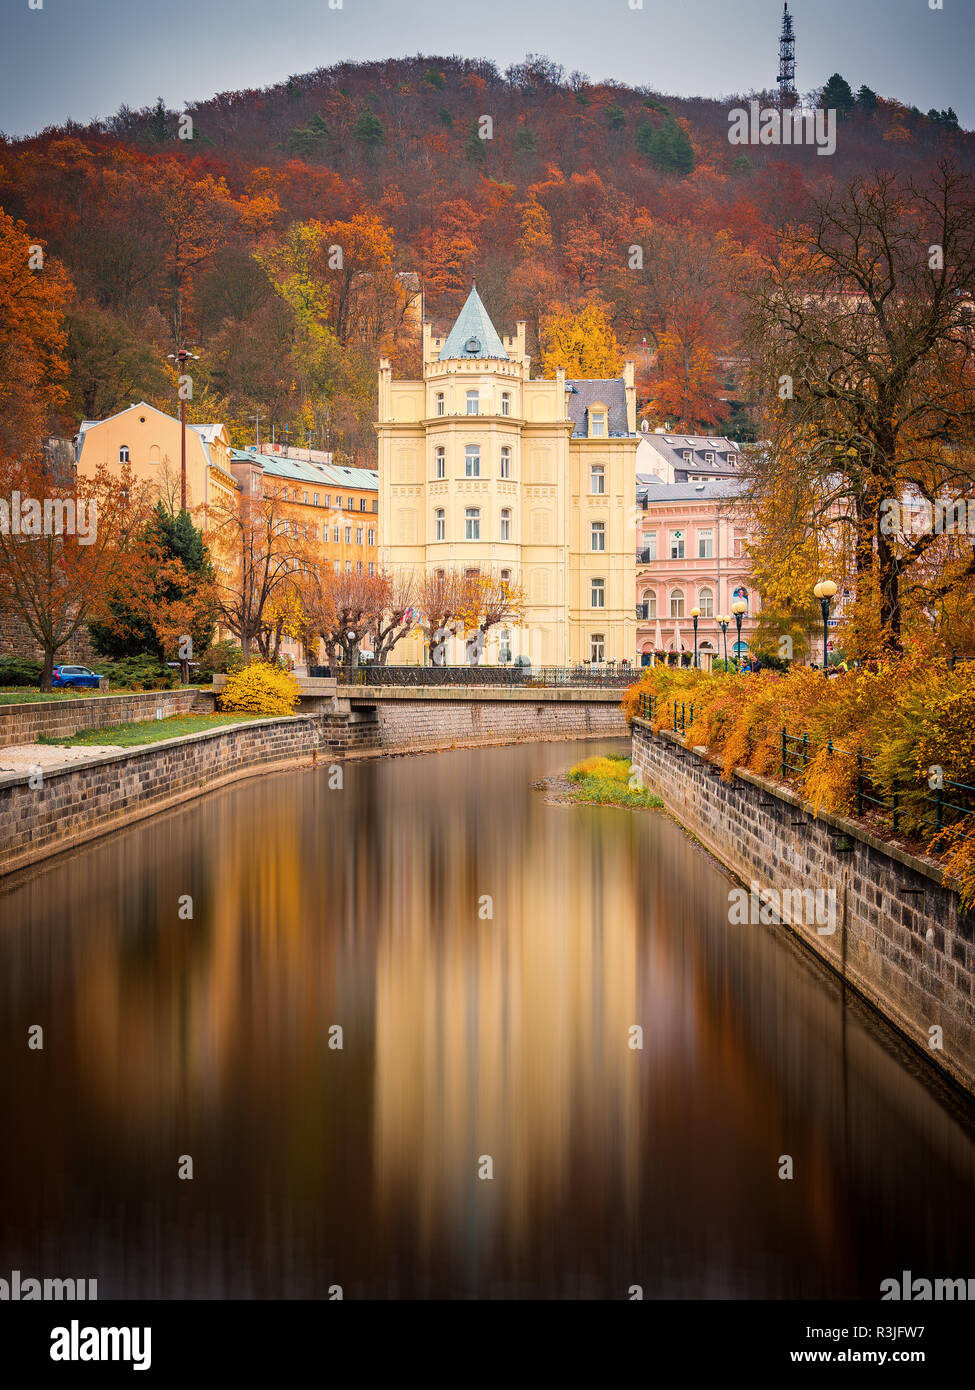 Bellissima vista sulle case colorate di Karlovy Vary, una città termale nella Repubblica ceca nella stagione autunnale Foto Stock